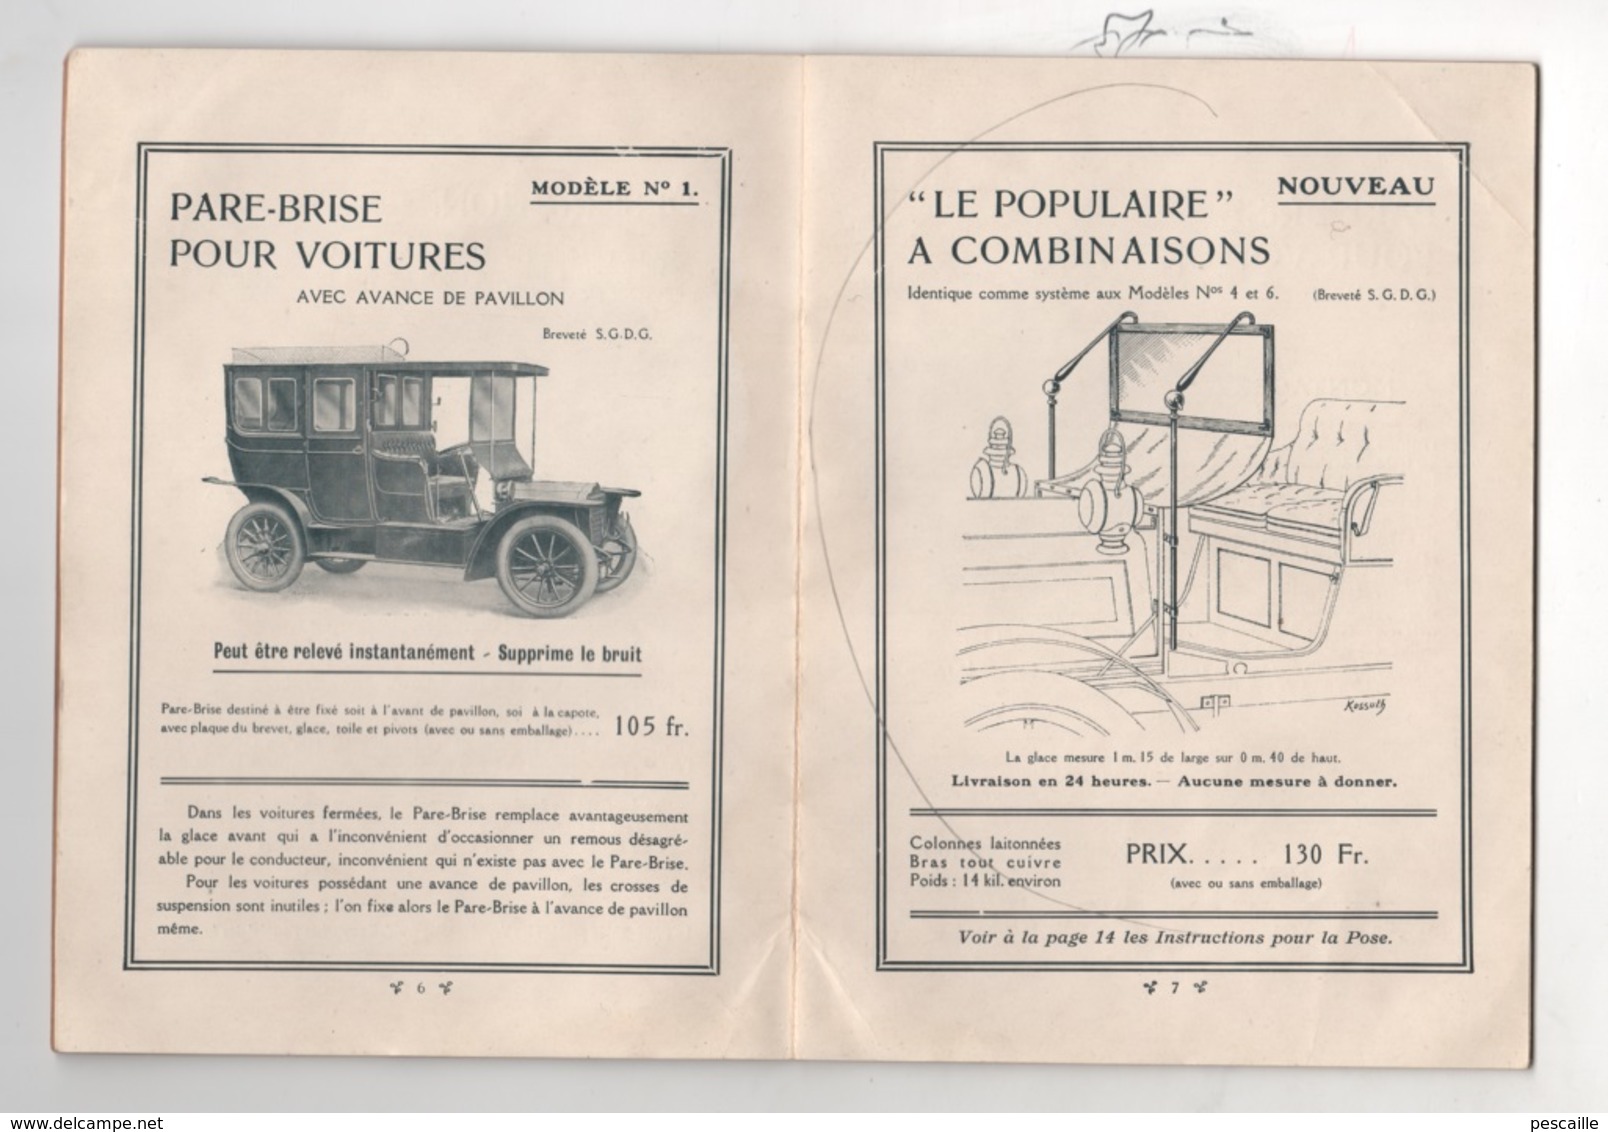 RARE - 1909 - ACCESSOIRES POUR AUTOMOBILE - DEPLIANT PUBLICITAIRE LES PARE-BRISE HUILLIER - - Publicités